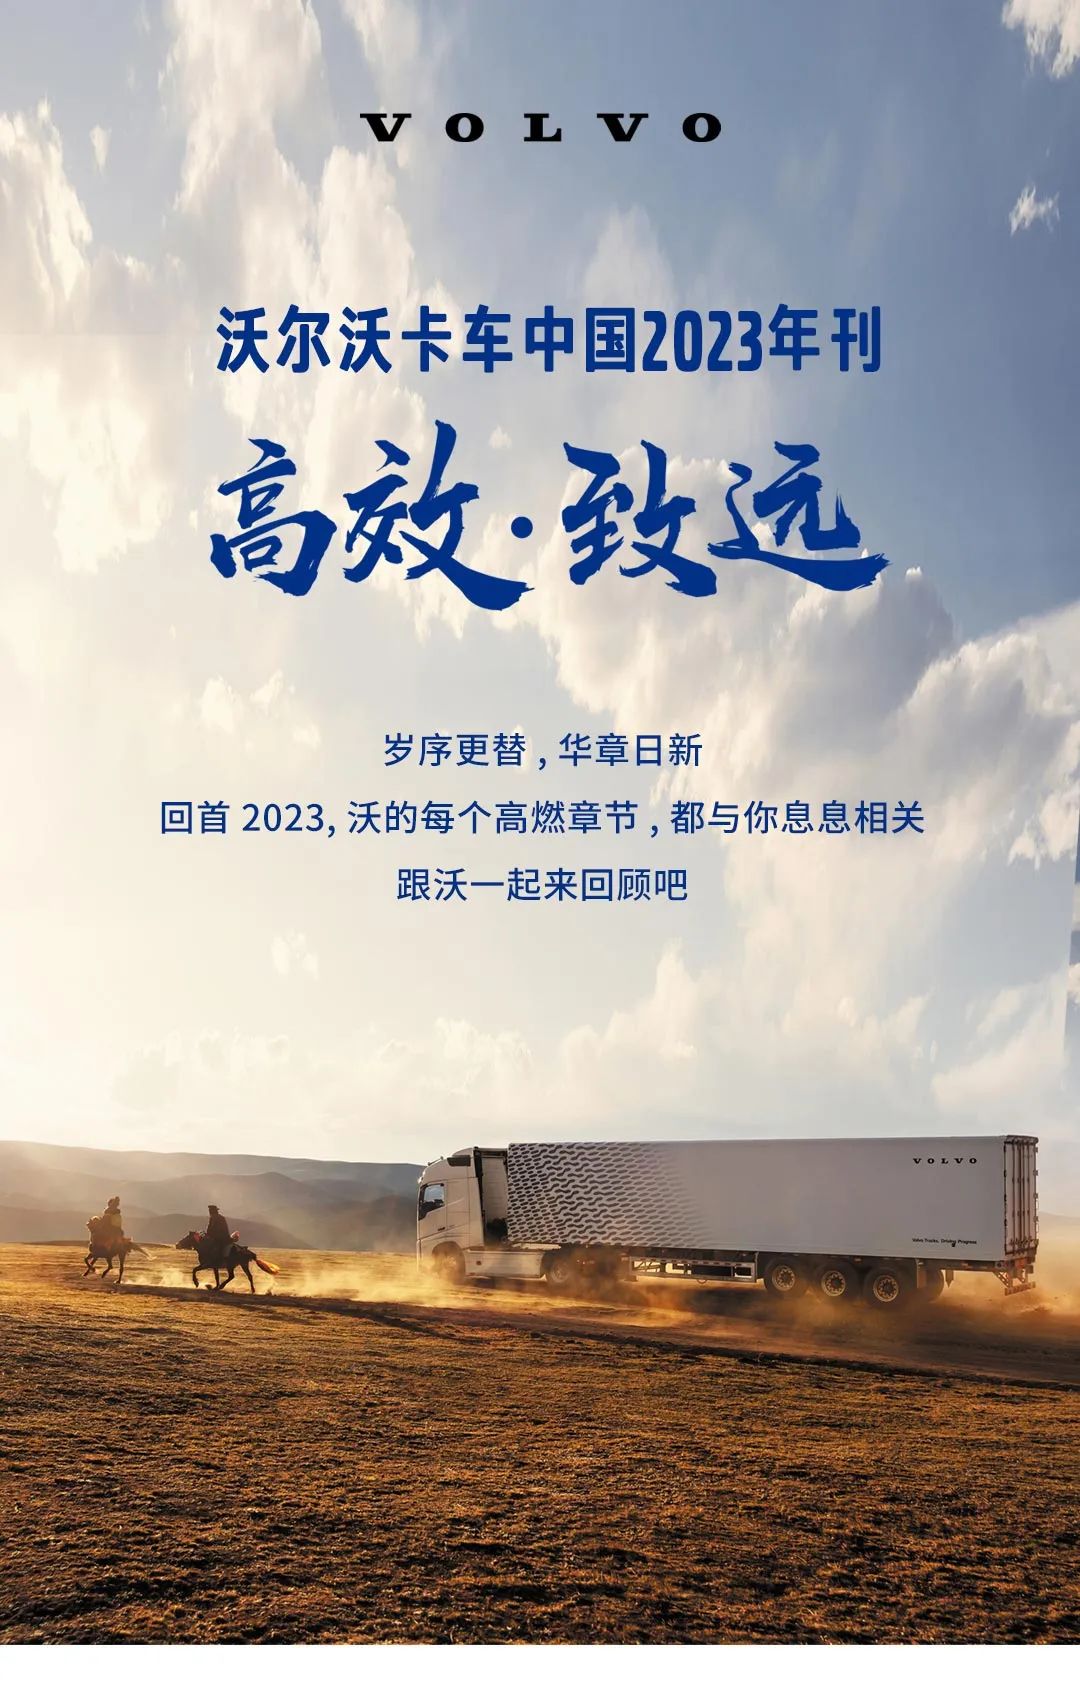 沃尔沃卡车中国2023年刊丨高效·致远